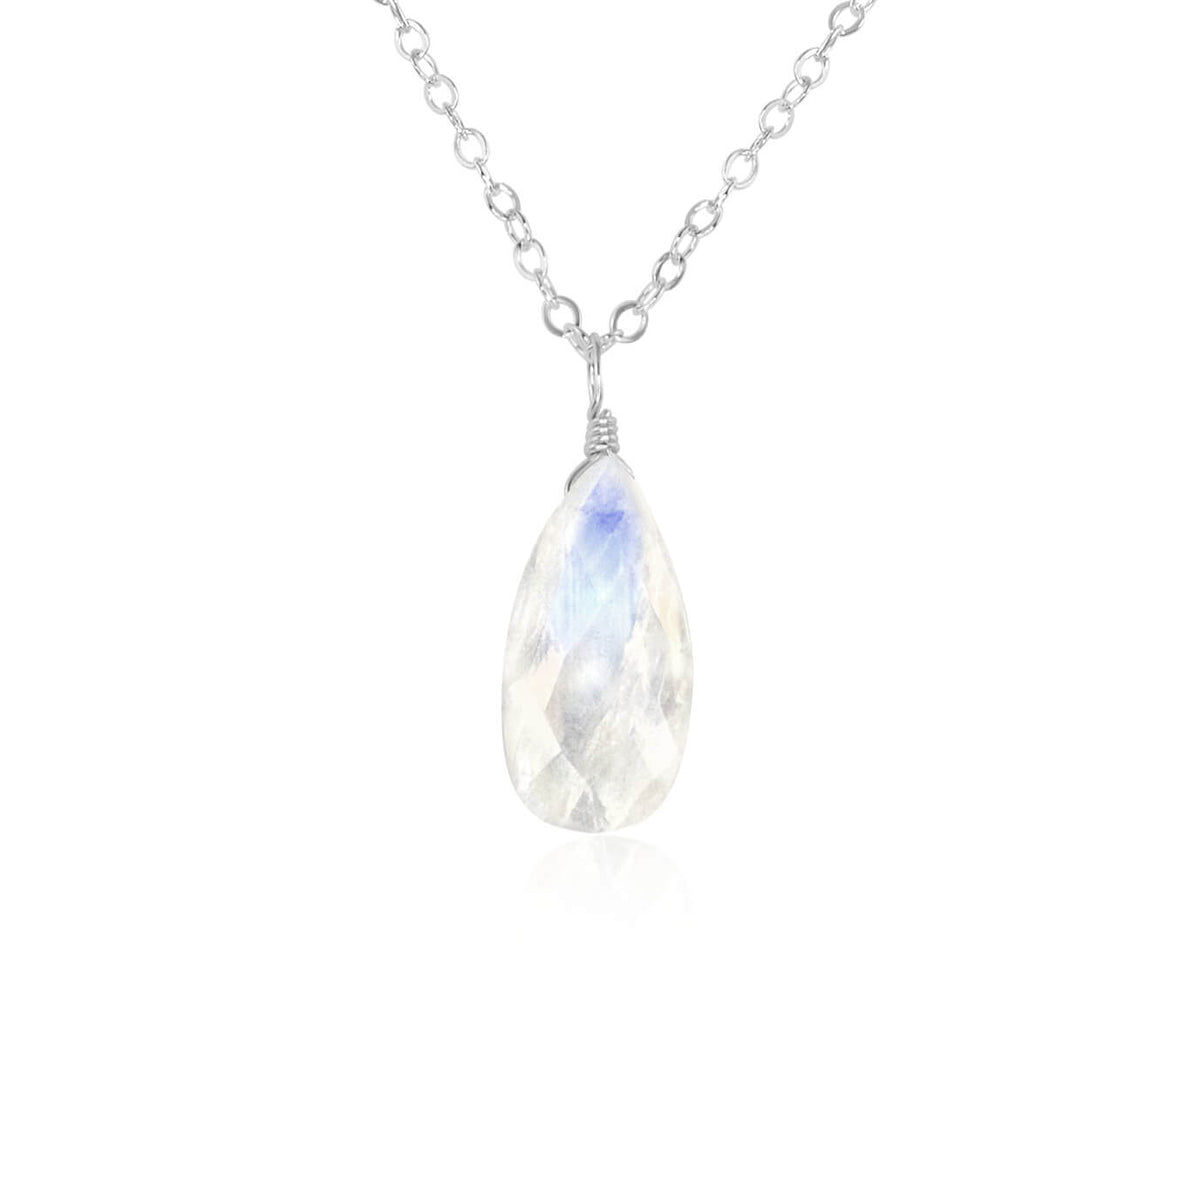 Teardrop Necklace - Rainbow Moonstone - Sterling Silver - Luna Tide Handmade Jewellery